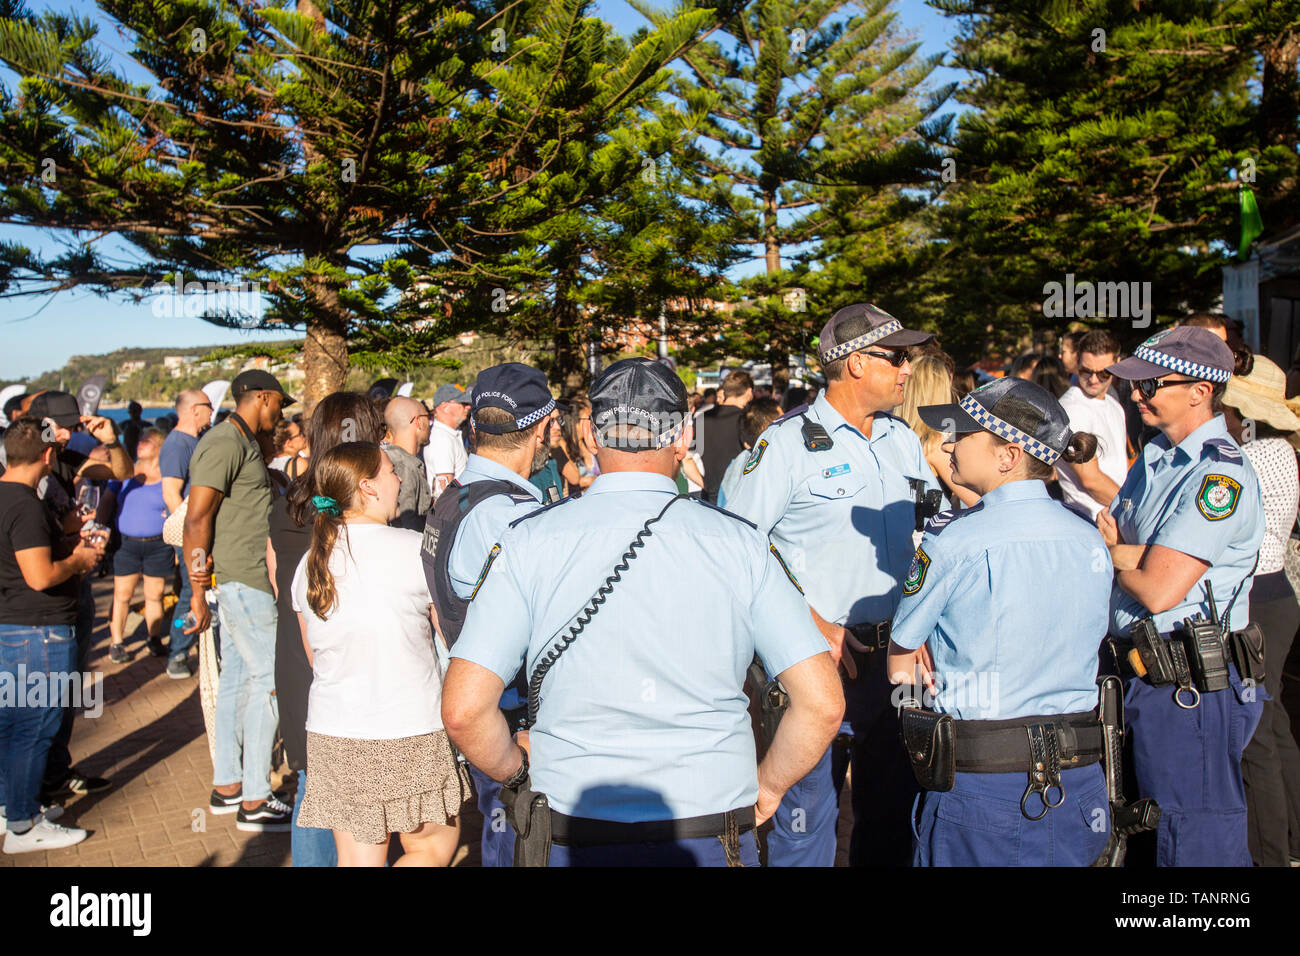 Les agents de police de la Nouvelle-Galles du Sud dans un groupe à goût de Manly food and wine festival à Sydney, Australie avec des agents de police masculins et féminins Banque D'Images